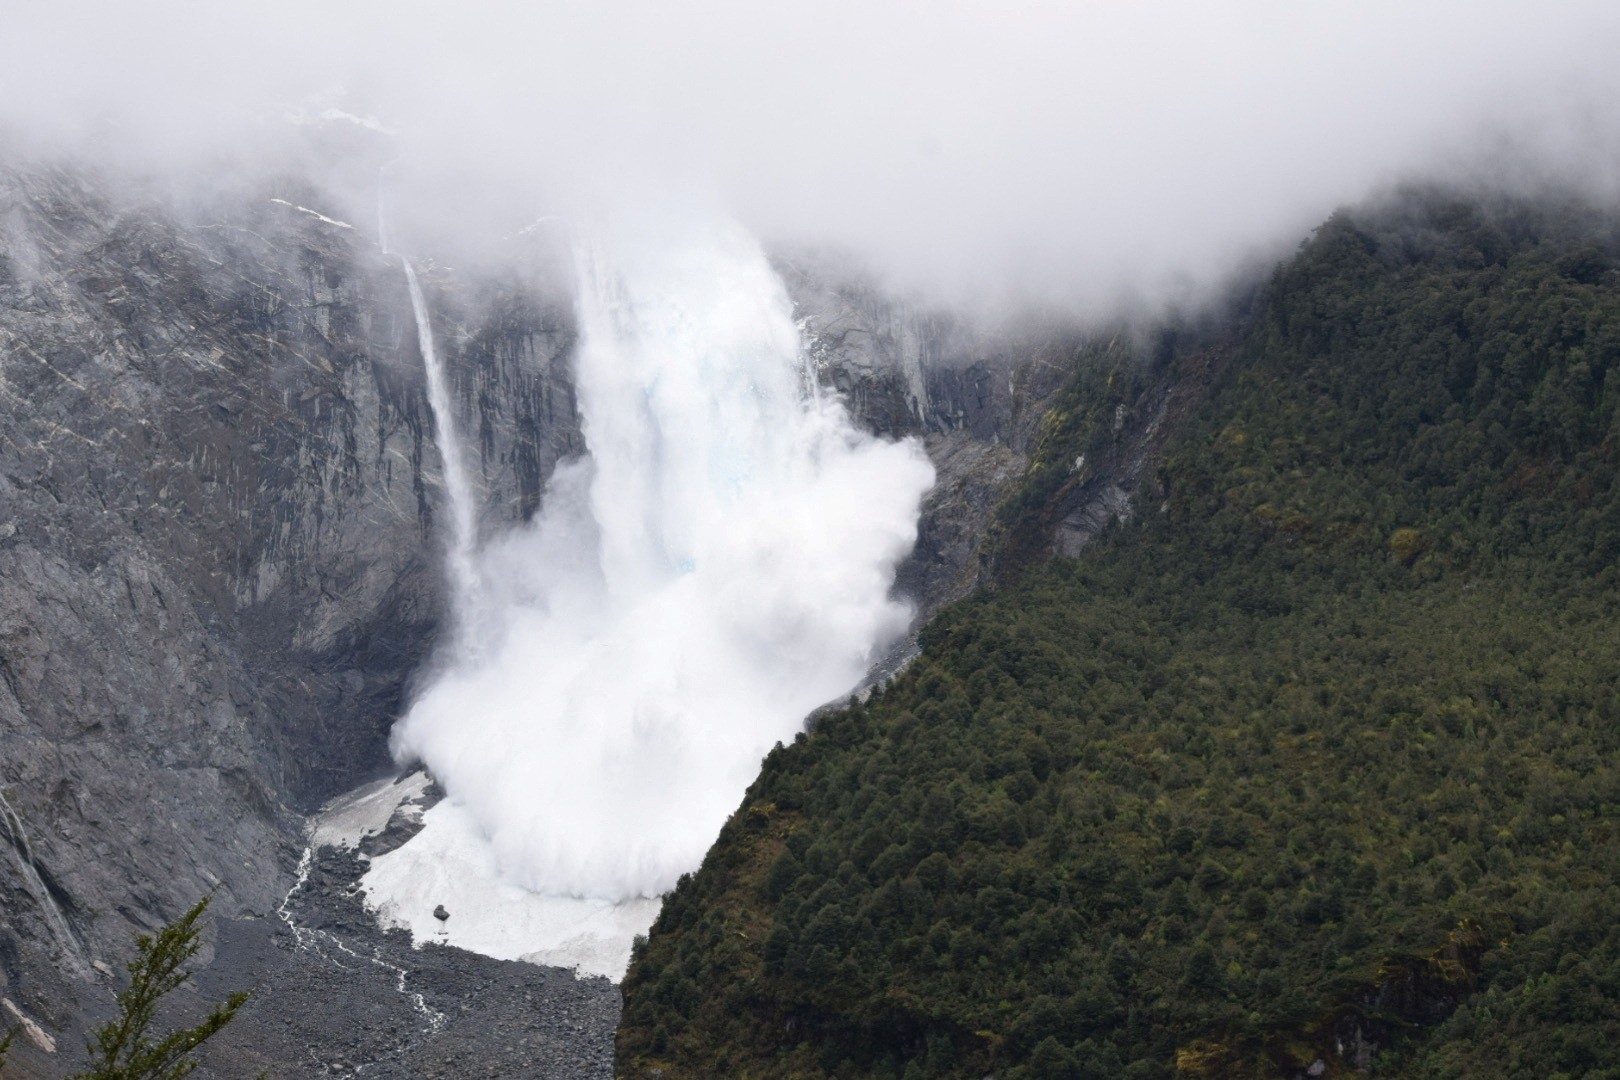 Uma geleira despenca em um rio no Parque Nacional Queulat, em Aysen, no Chile (Foto: Cortesia Surreal Travel/via Reuters)